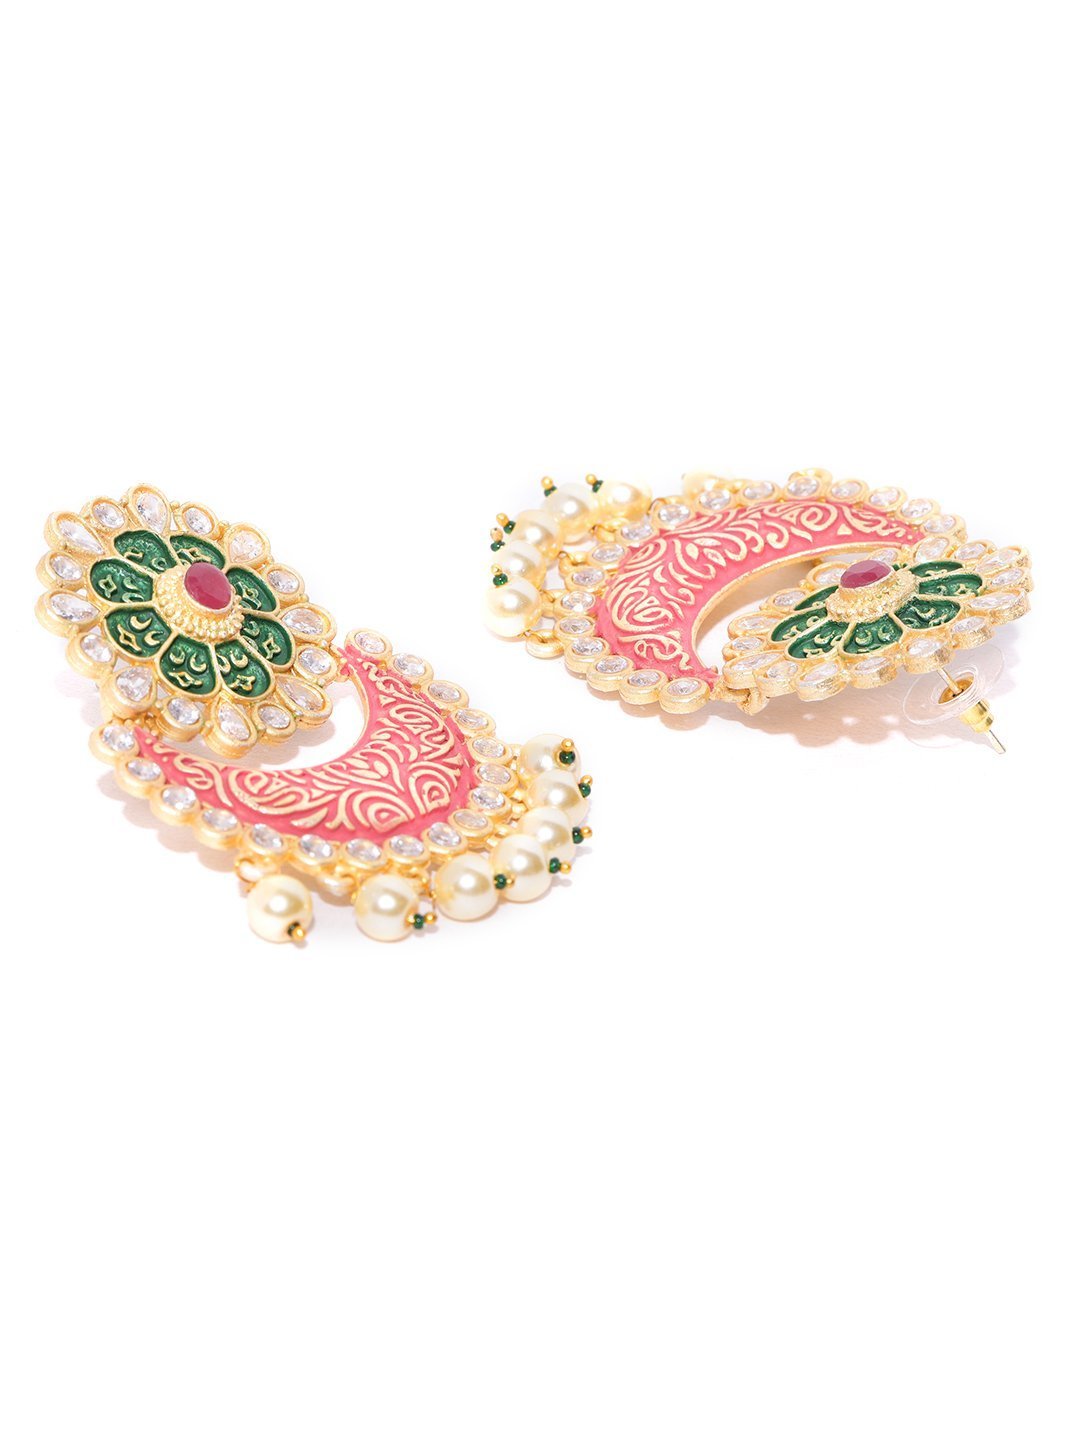 Women Golden, Red-Green Pearl Drop Earrings by Priyaasi (1 Pair Earrings)